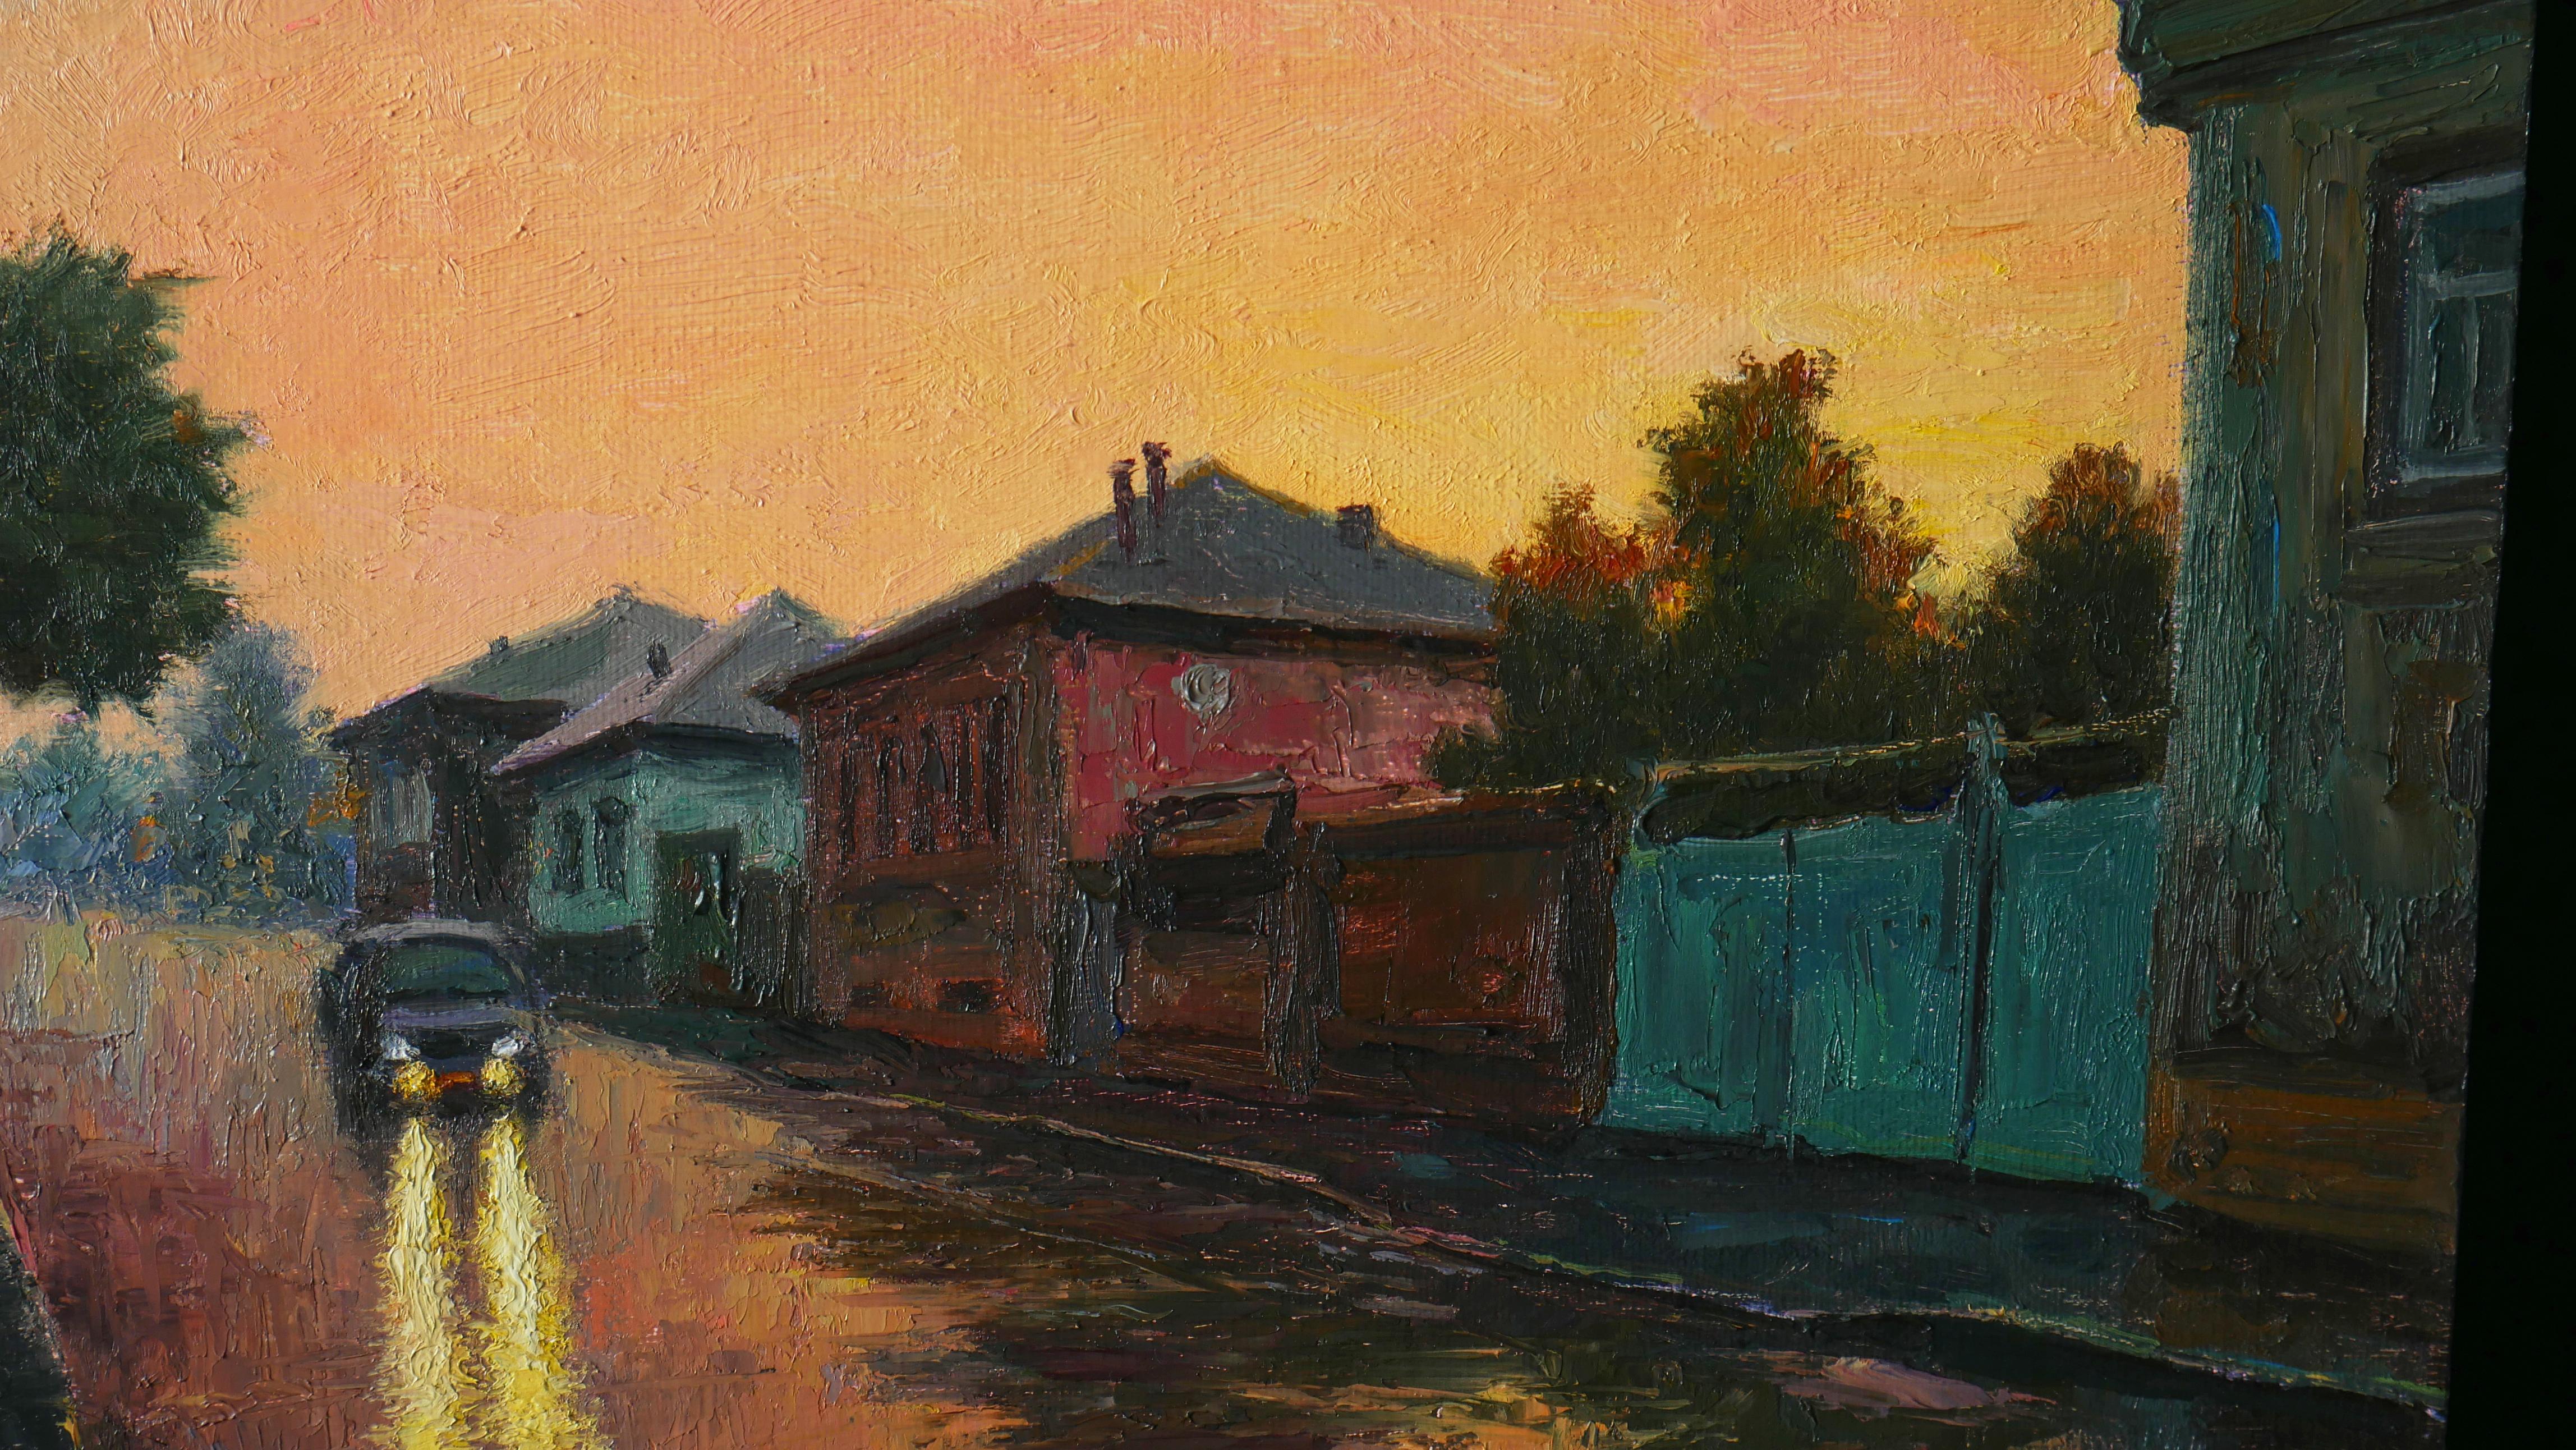 C'est une pluie chaude d'été au coucher du soleil - Impressionnisme Painting par Nikolaj Dmitriev